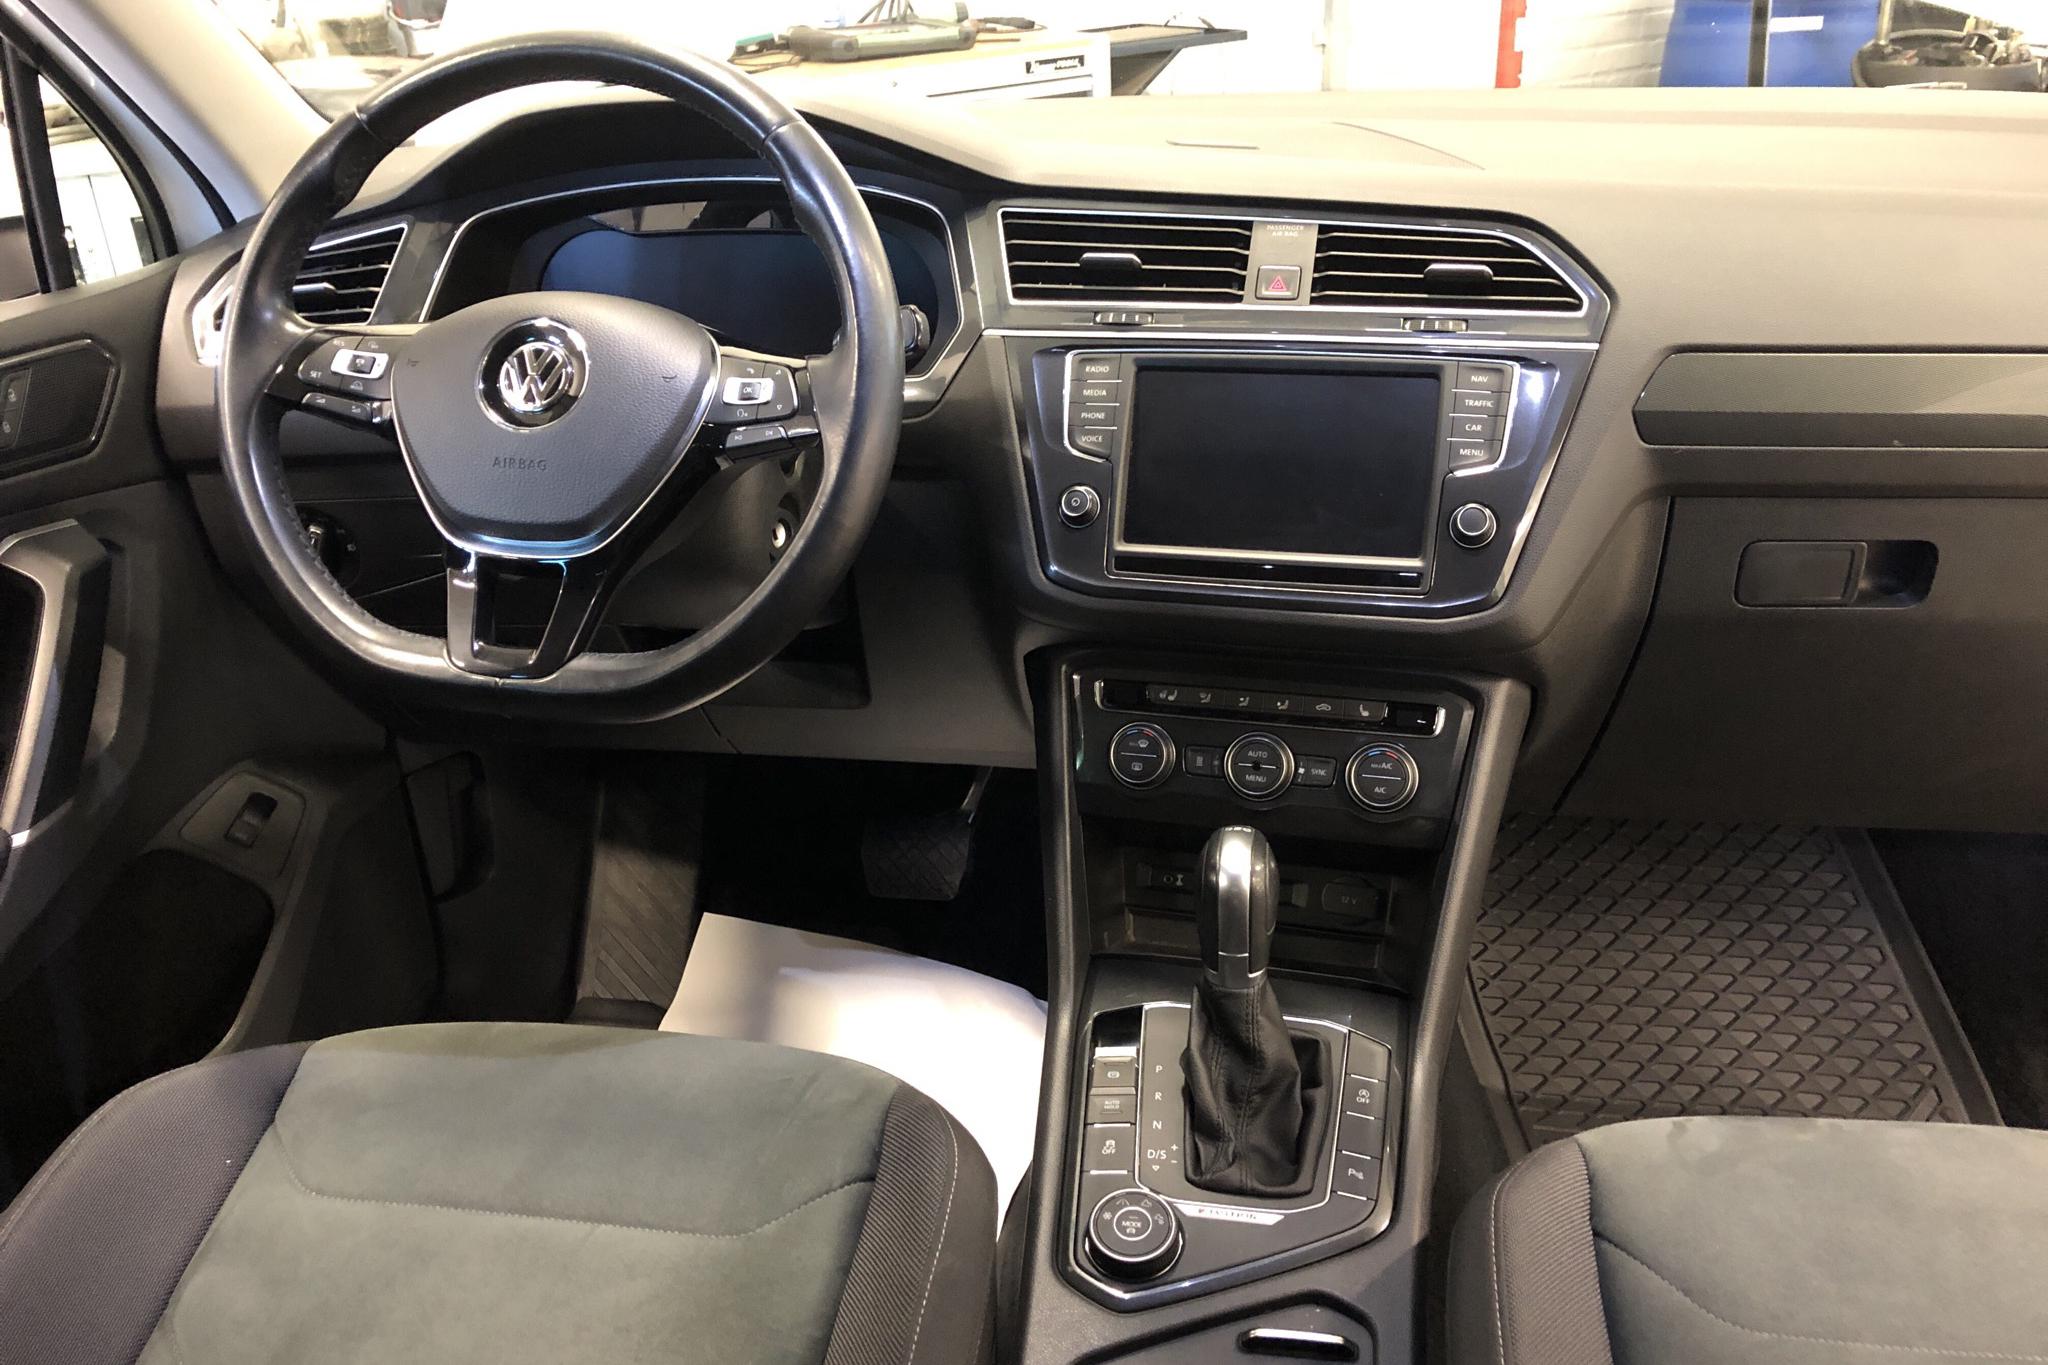 VW Tiguan 2.0 TDI 4MOTION (190hk) - 104 760 km - Automatic - white - 2017